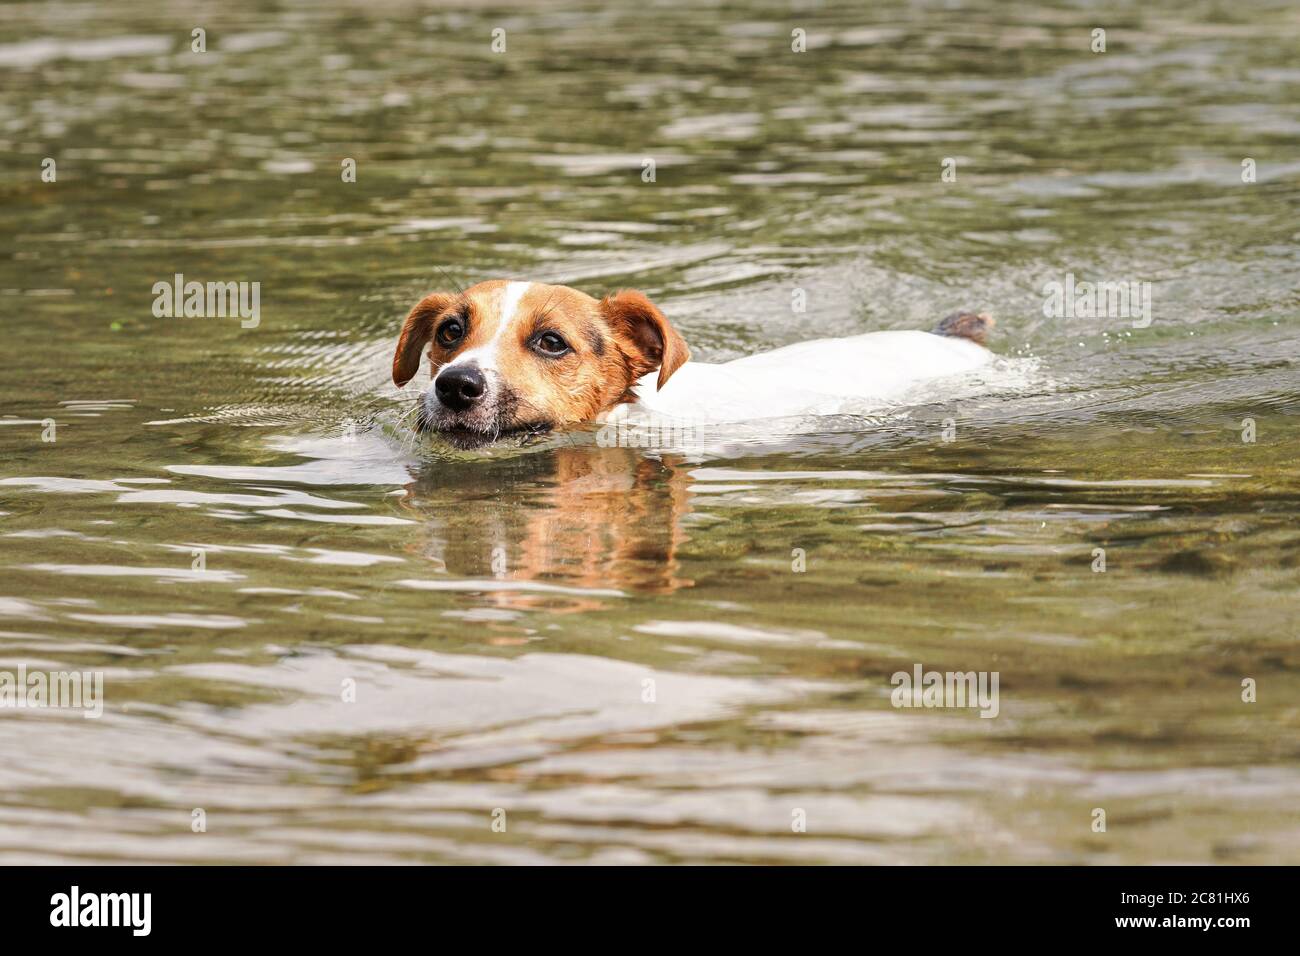 Jack Russell cane terrier nuotare in fiume, solo la sua testa visibile sopra l'acqua Foto Stock